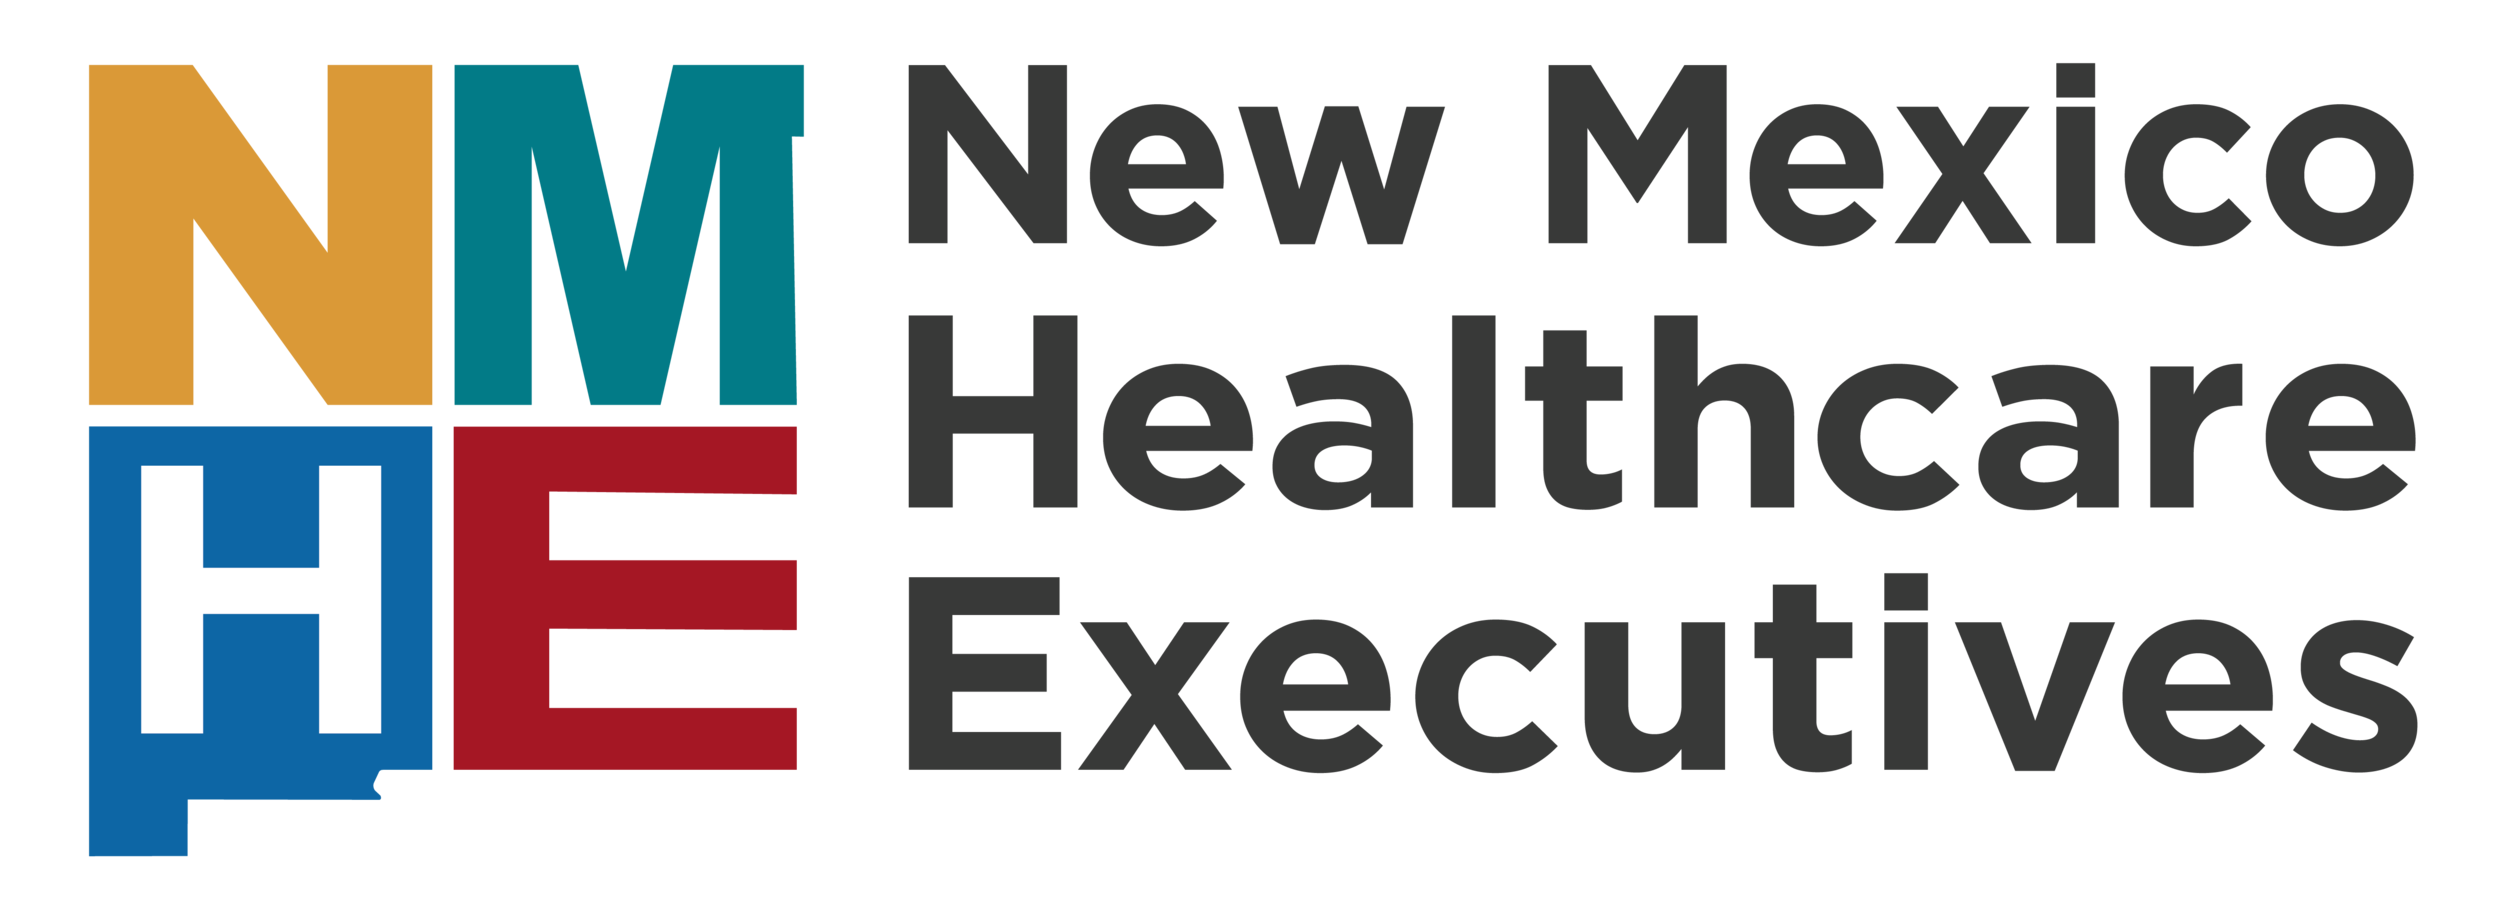 New Mexico Healthcare Executives